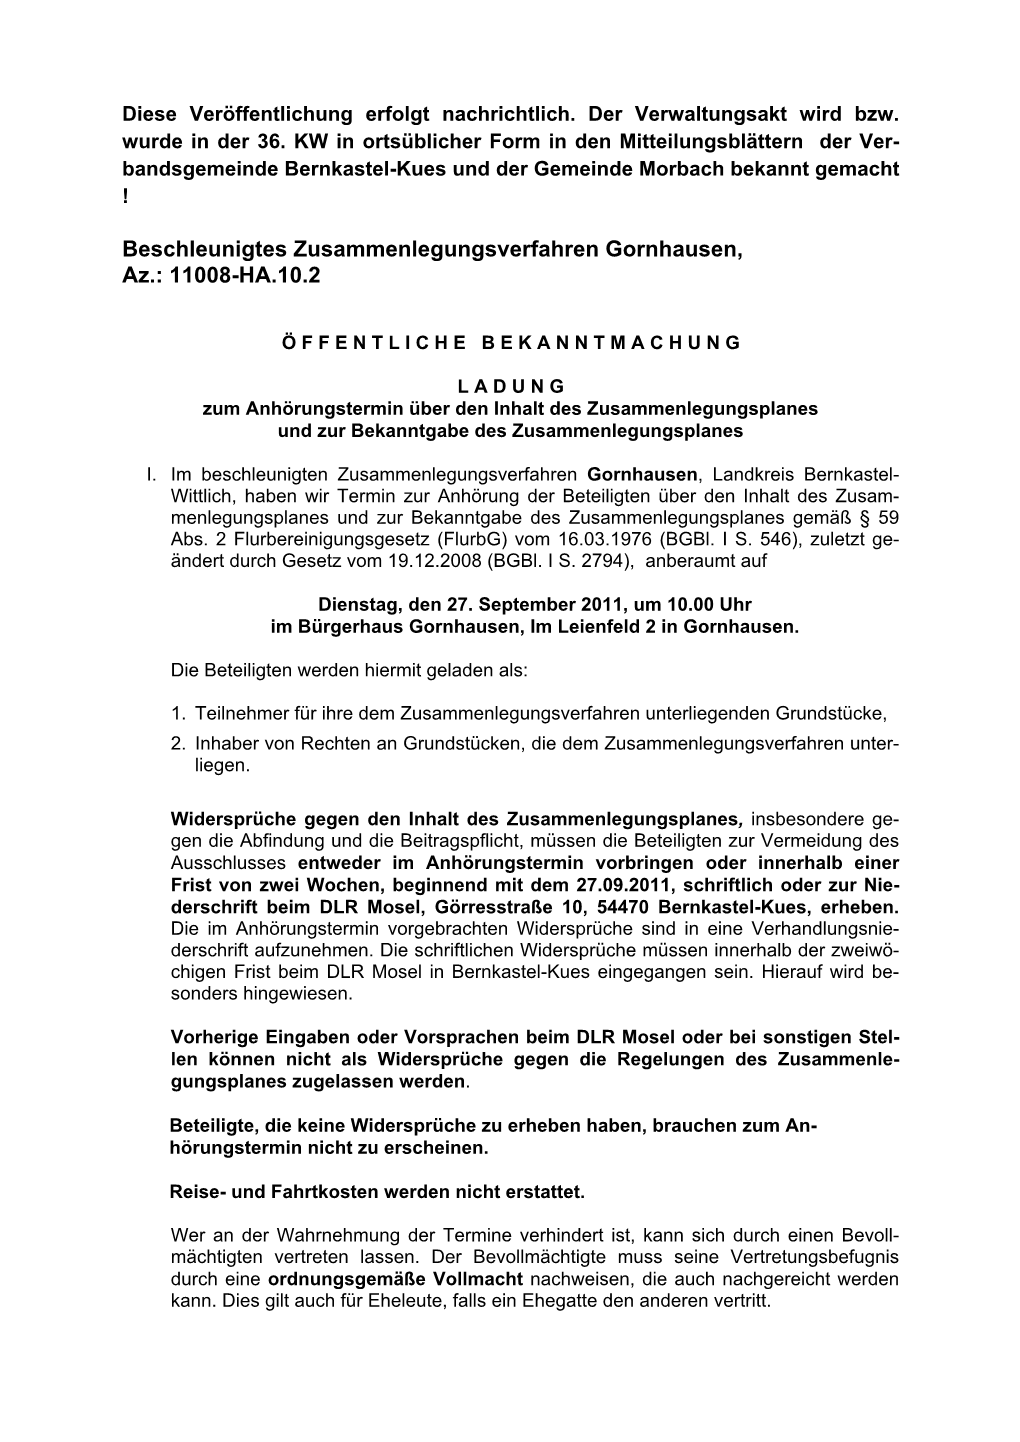 Beschleunigtes Zusammenlegungsverfahren Gornhausen, Az.: 11008-HA.10.2